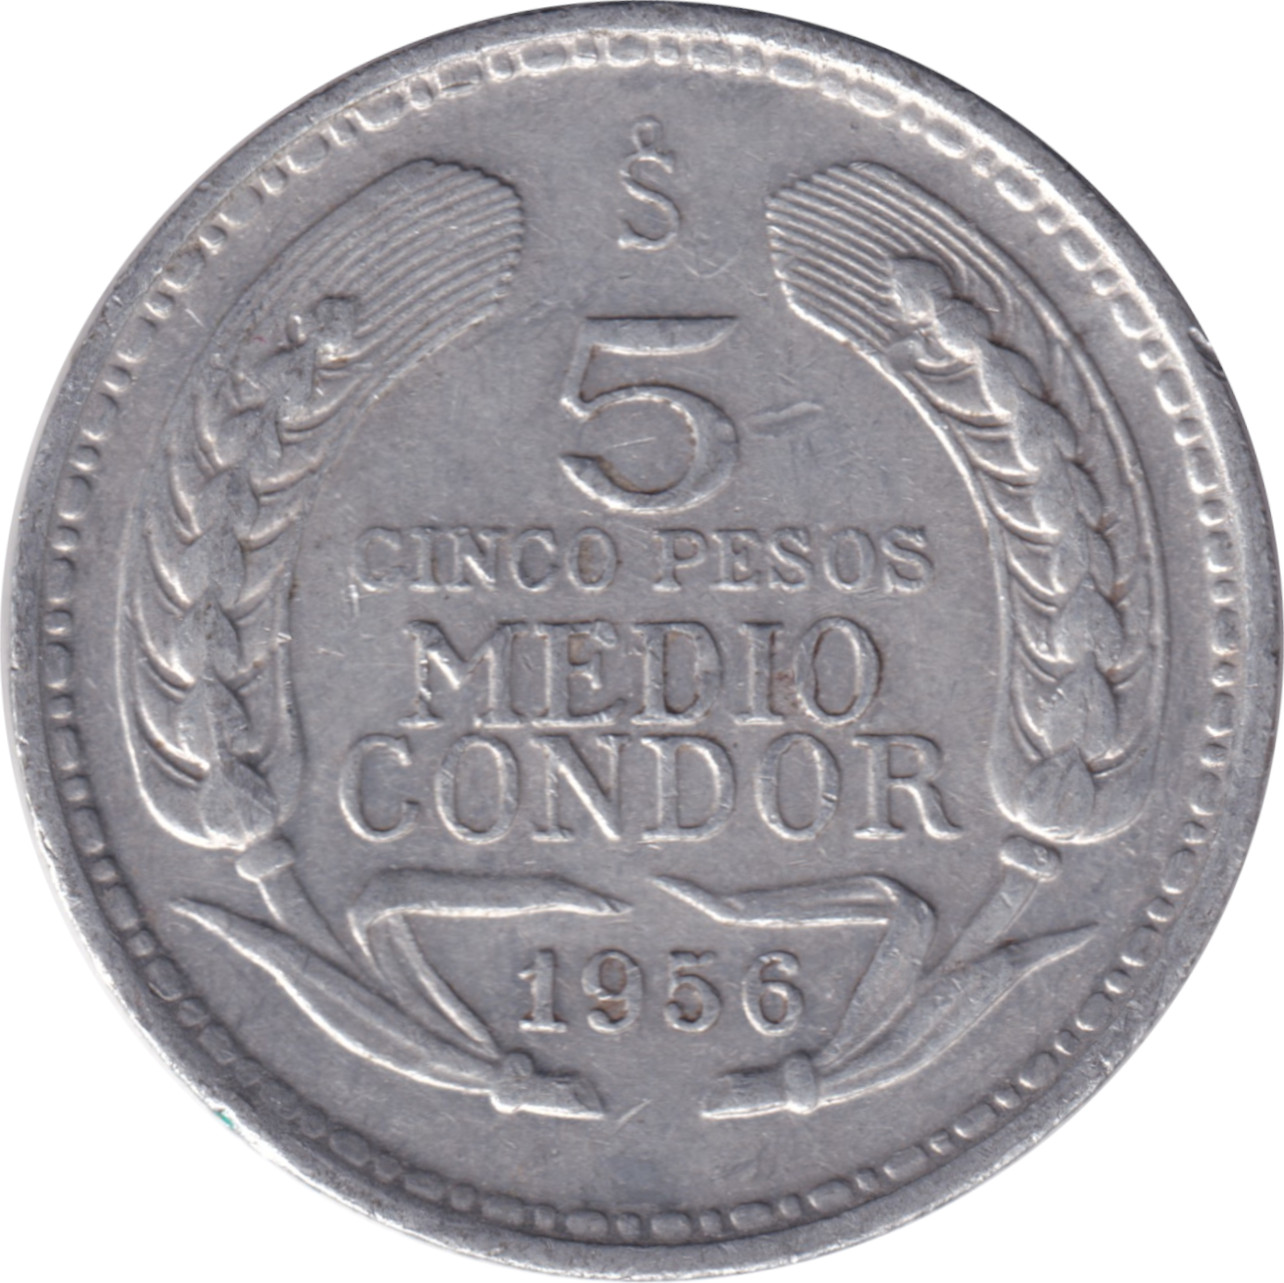 5 pesos - Condor